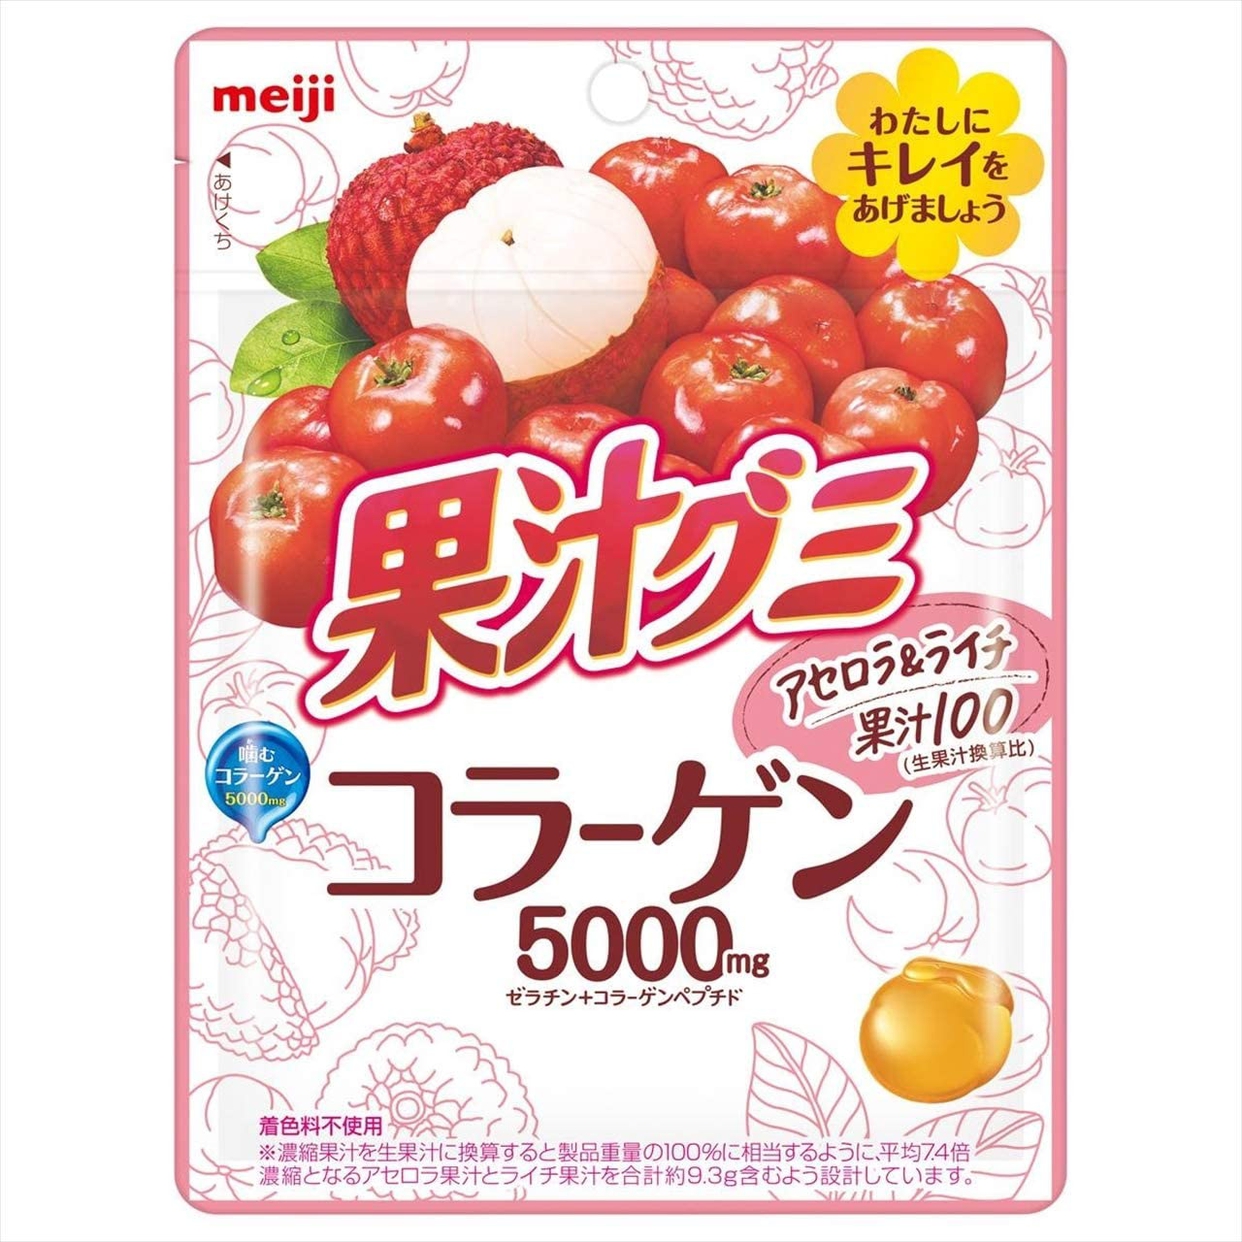 明治(meiji) 果汁グミ コラーゲン